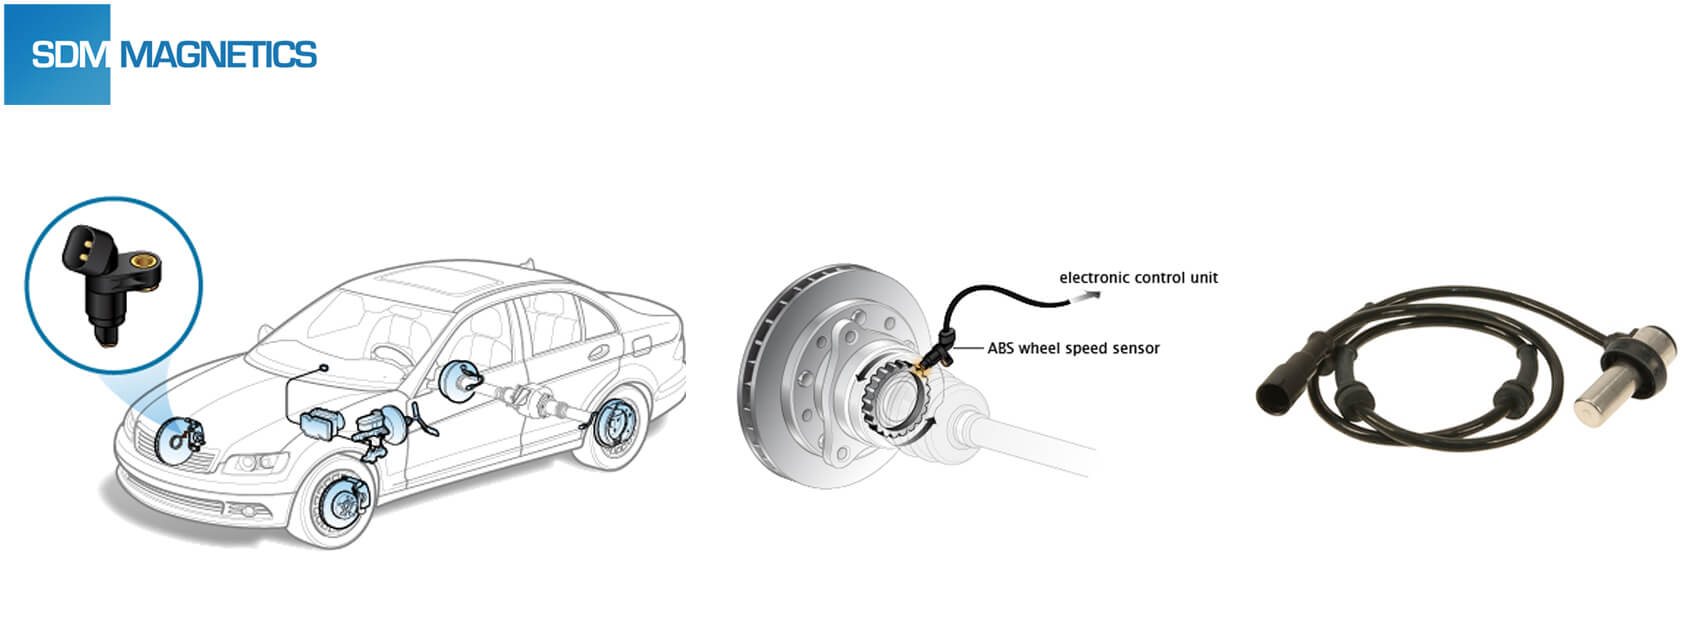 Wheel Speed Sensor Magnet Supplier - SDM Magnetics Co., Ltd.